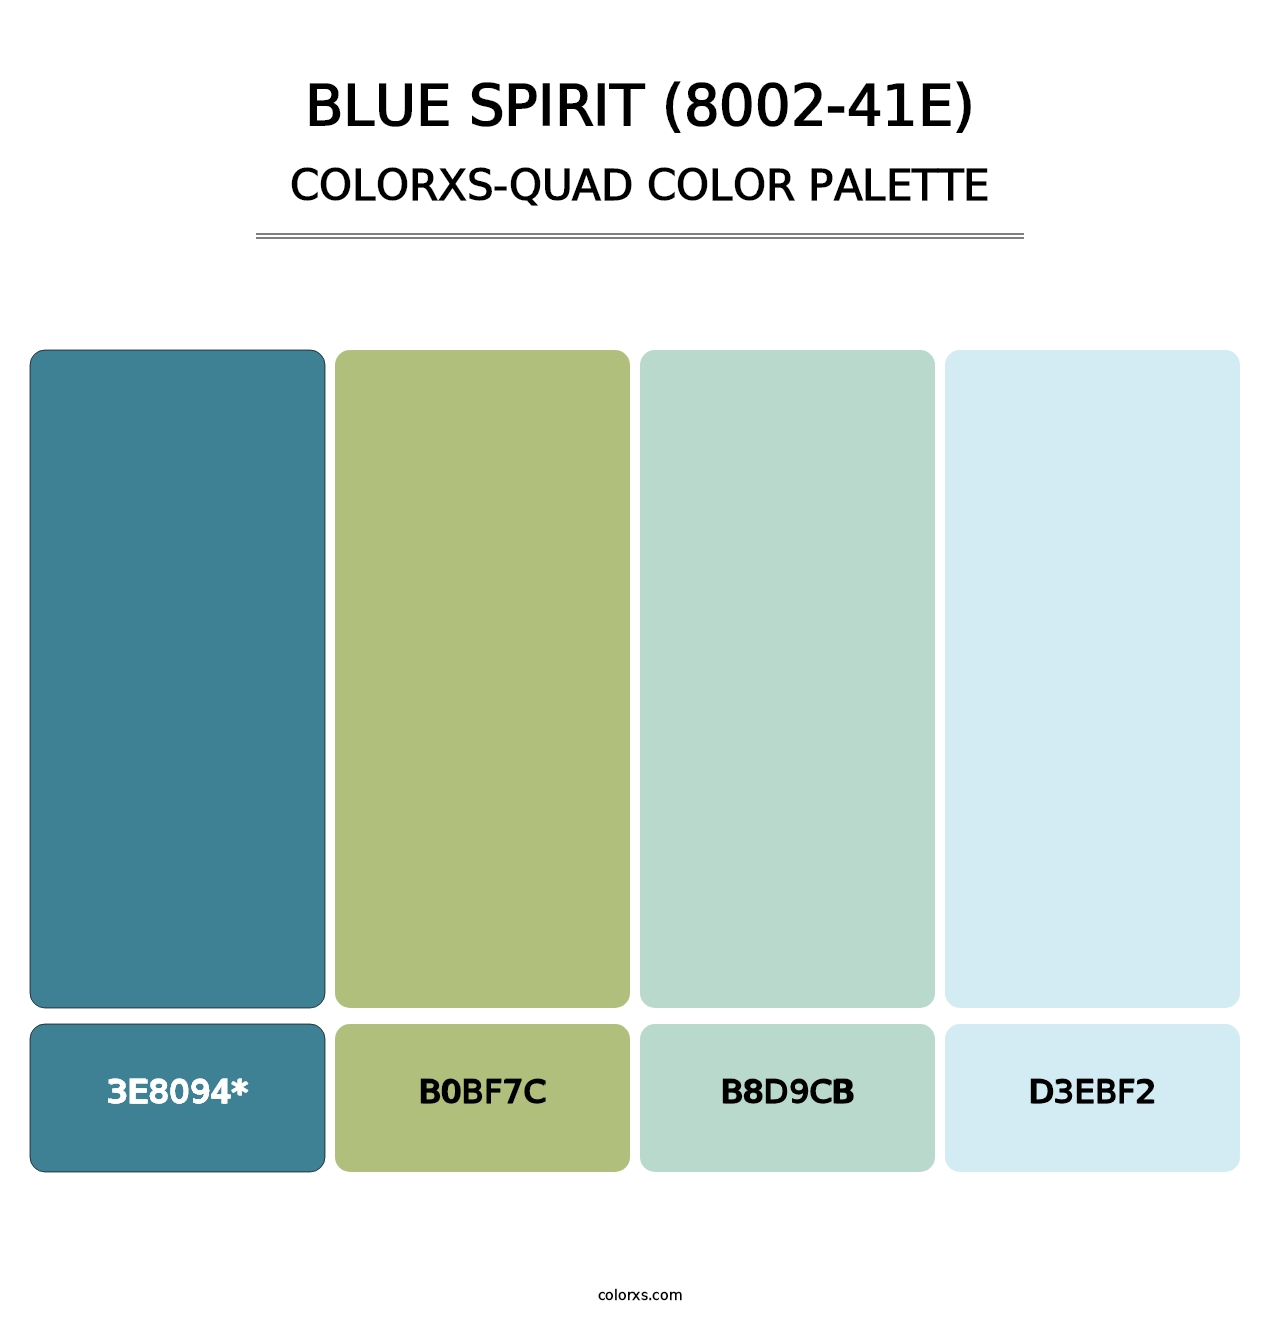 Blue Spirit (8002-41E) - Colorxs Quad Palette